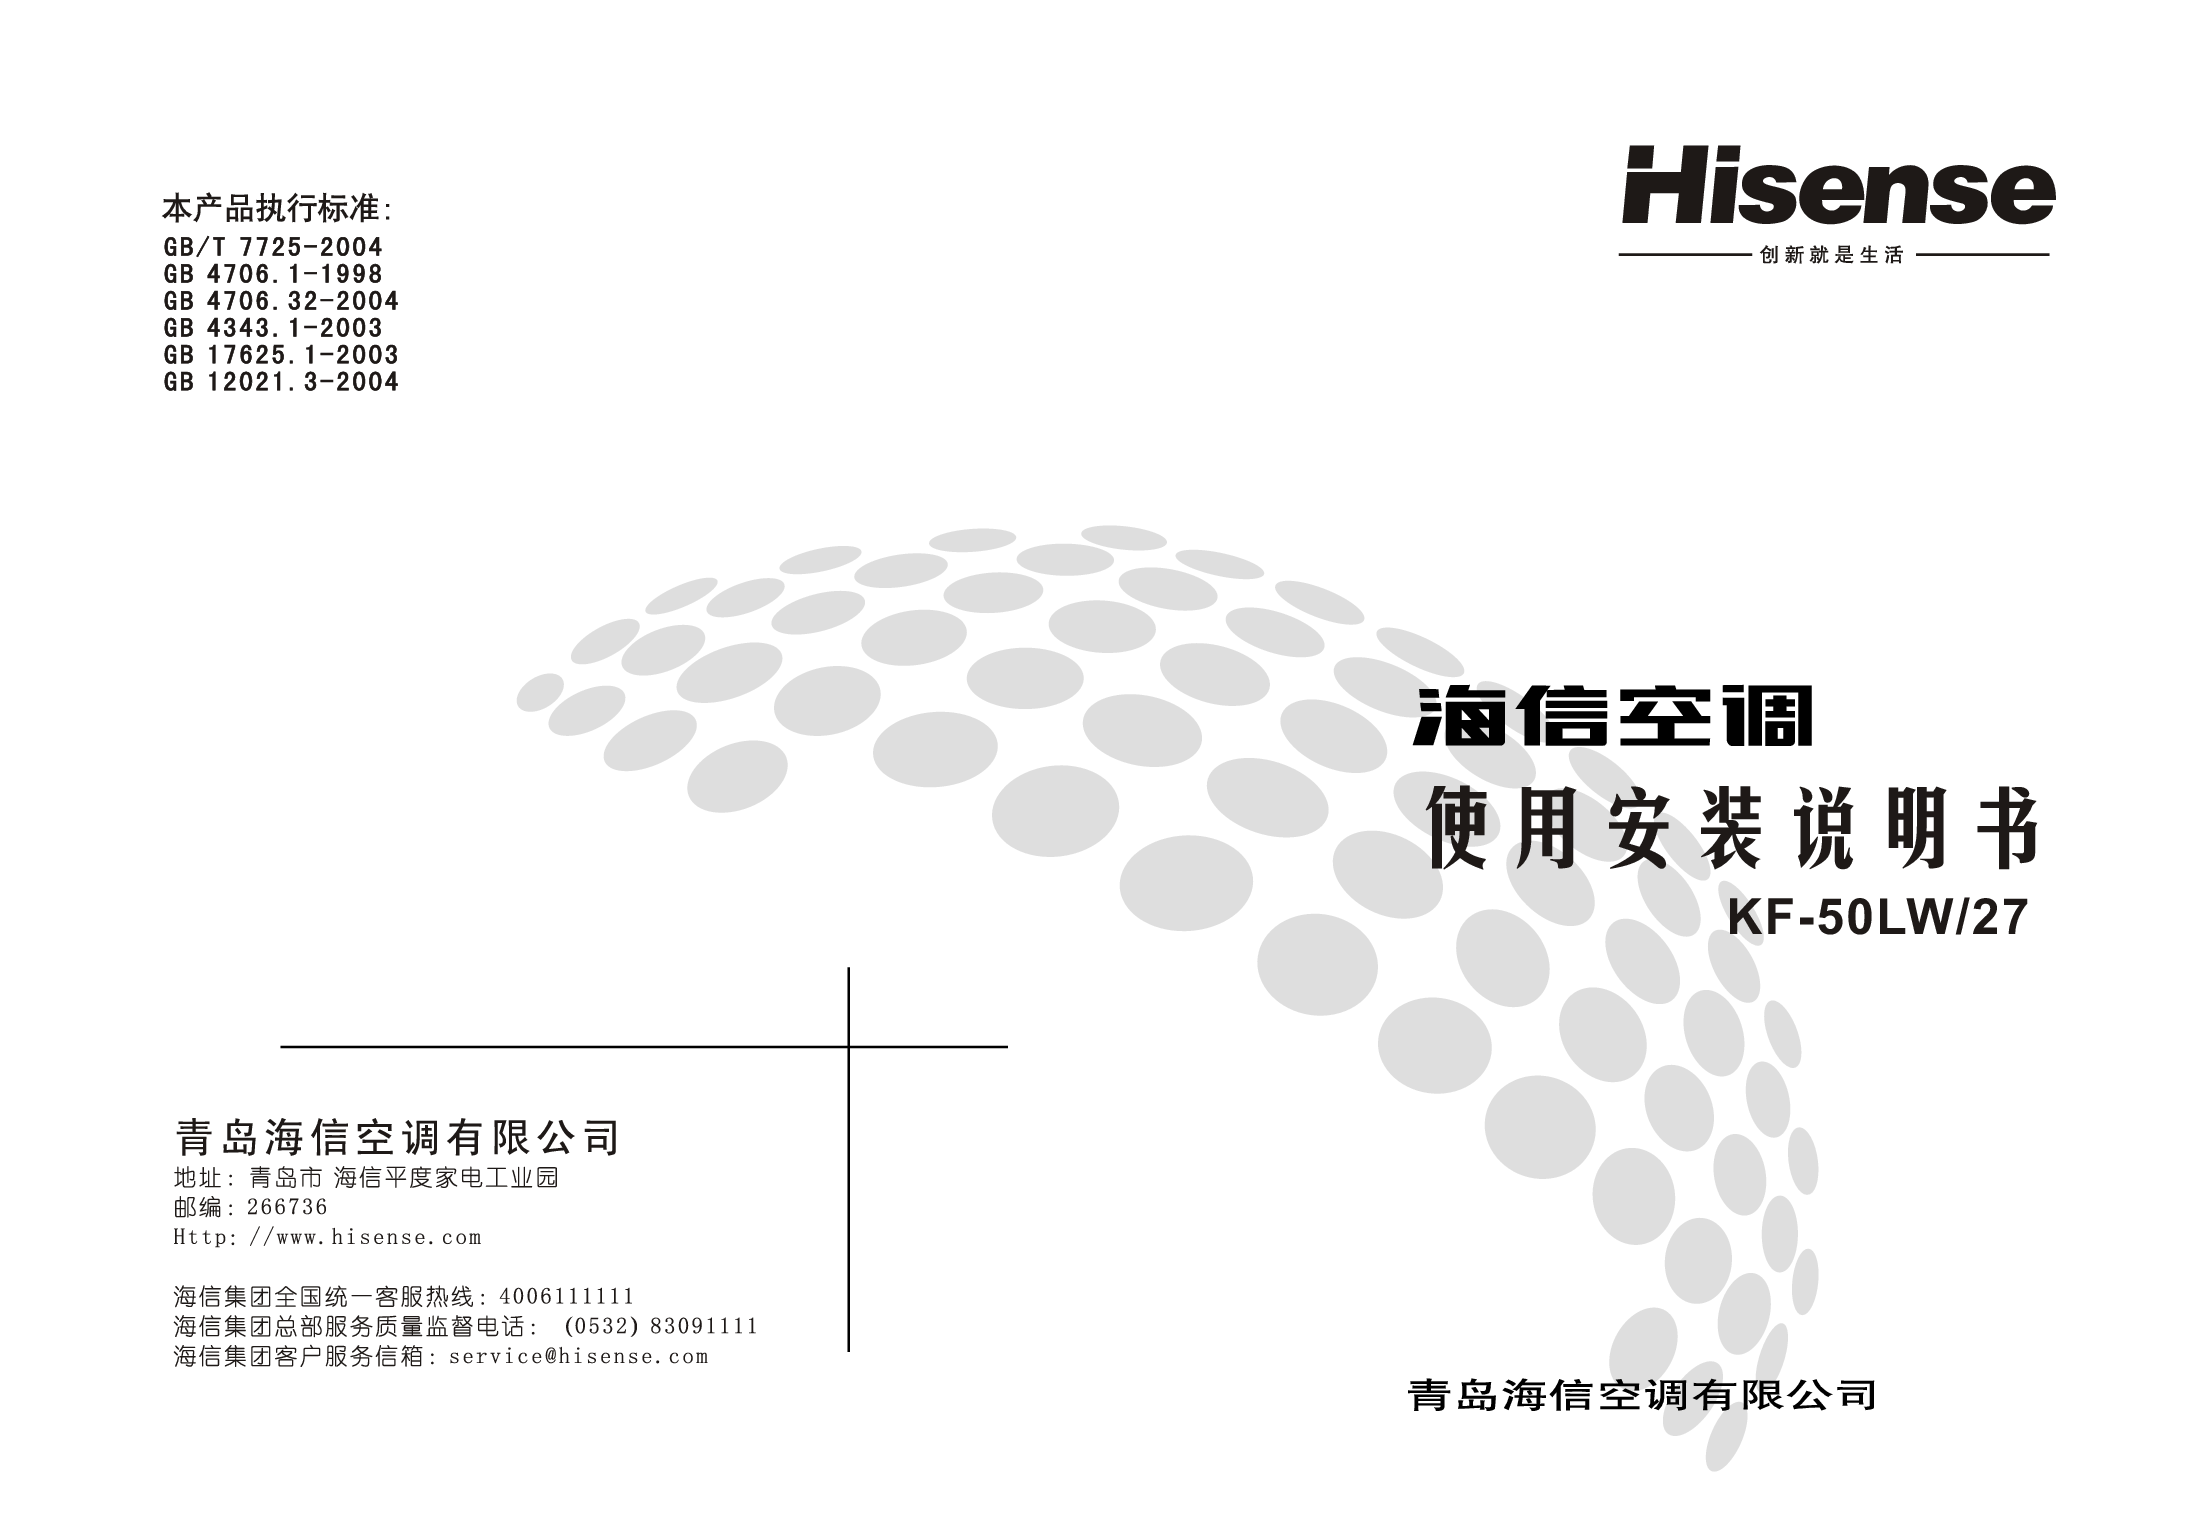 海信 Hisense KF-50LW/27 使用说明书 封面